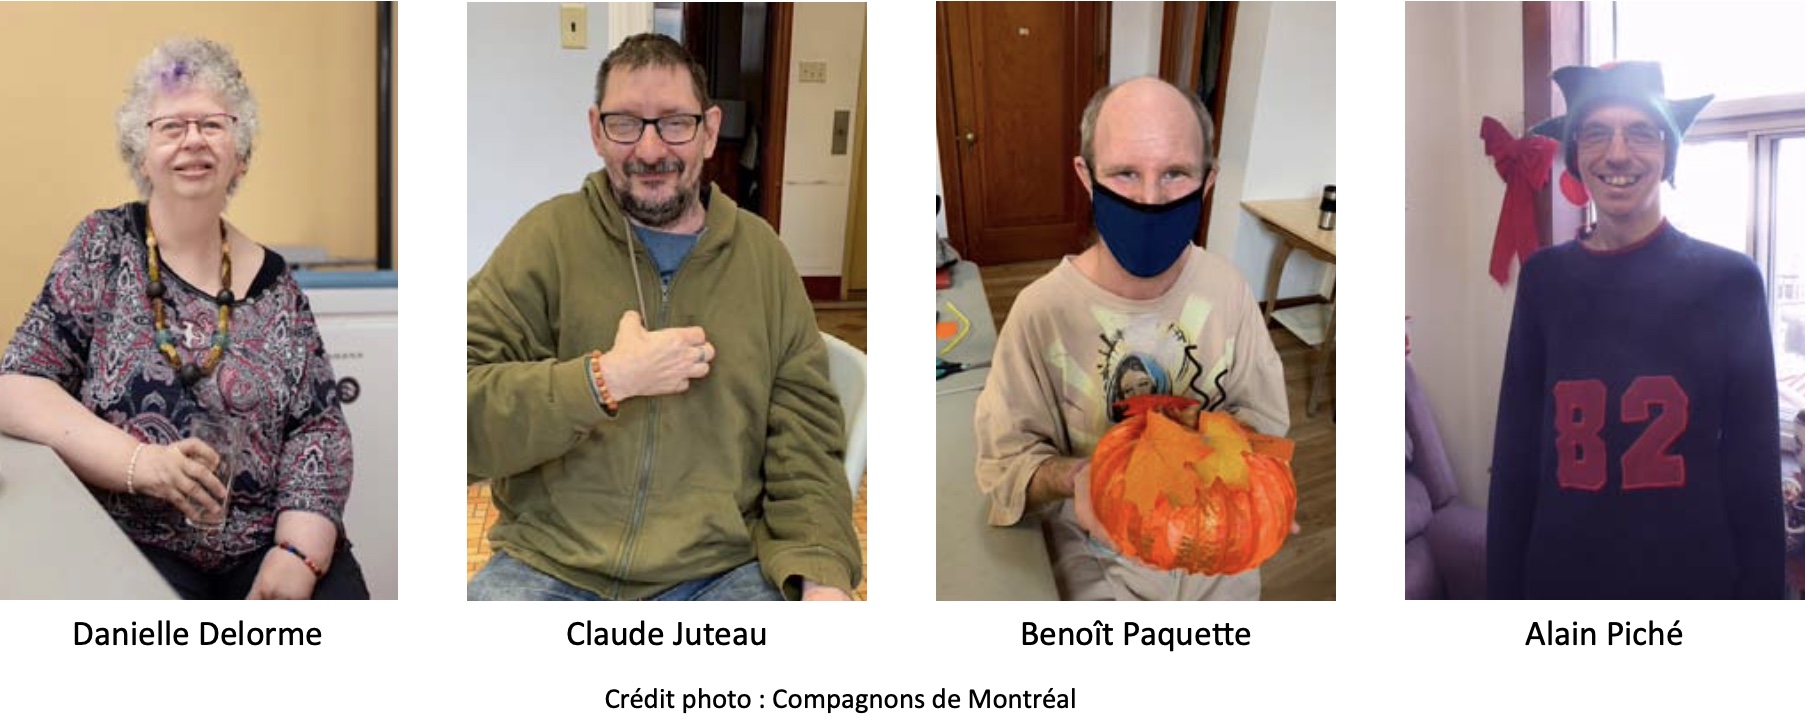 Danielle Delorme, Claude Juteau, Benoît Paquette, Alain Piché